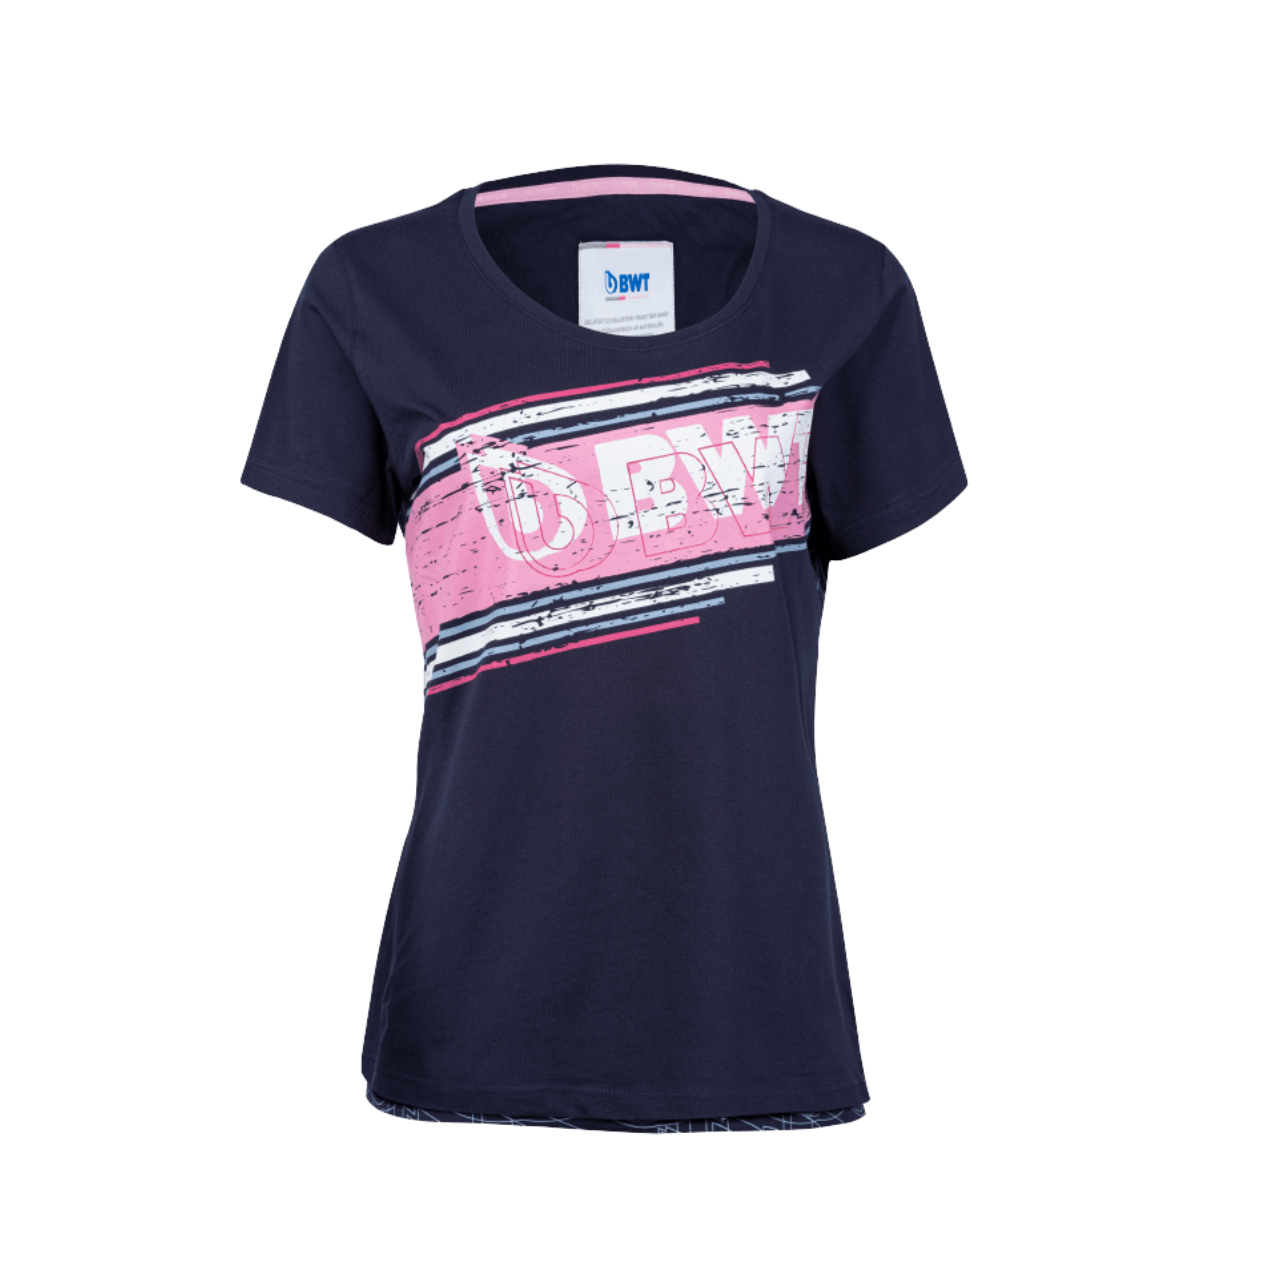 BWT Lifestyle T-Shirt Damend blau mit pinken Aufdruck und weißem BWT Logo auf der Brust